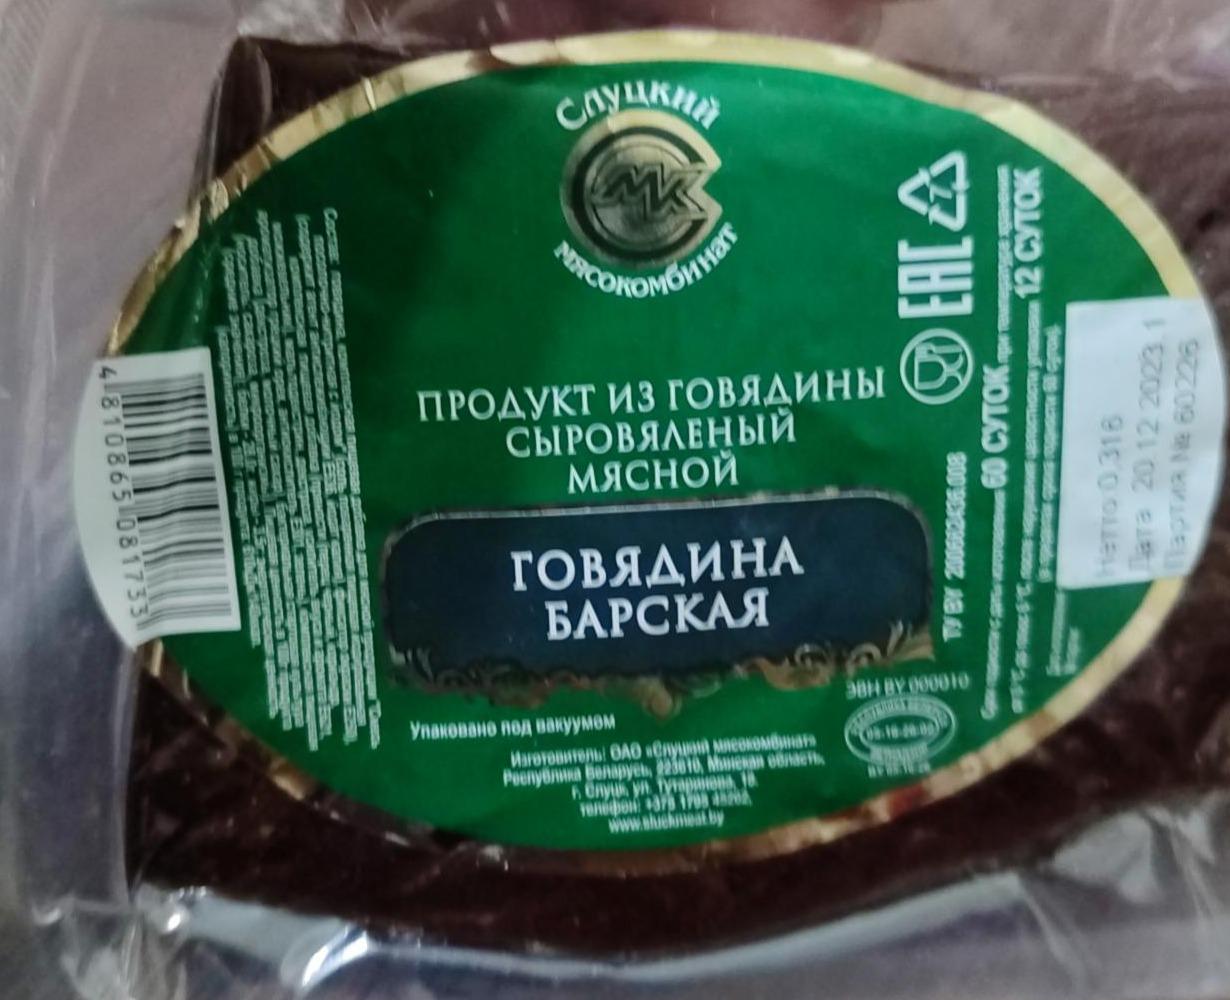 Фото - Продукт из говядины сыровяленый говядина барская Слуцкий мясокомбинат